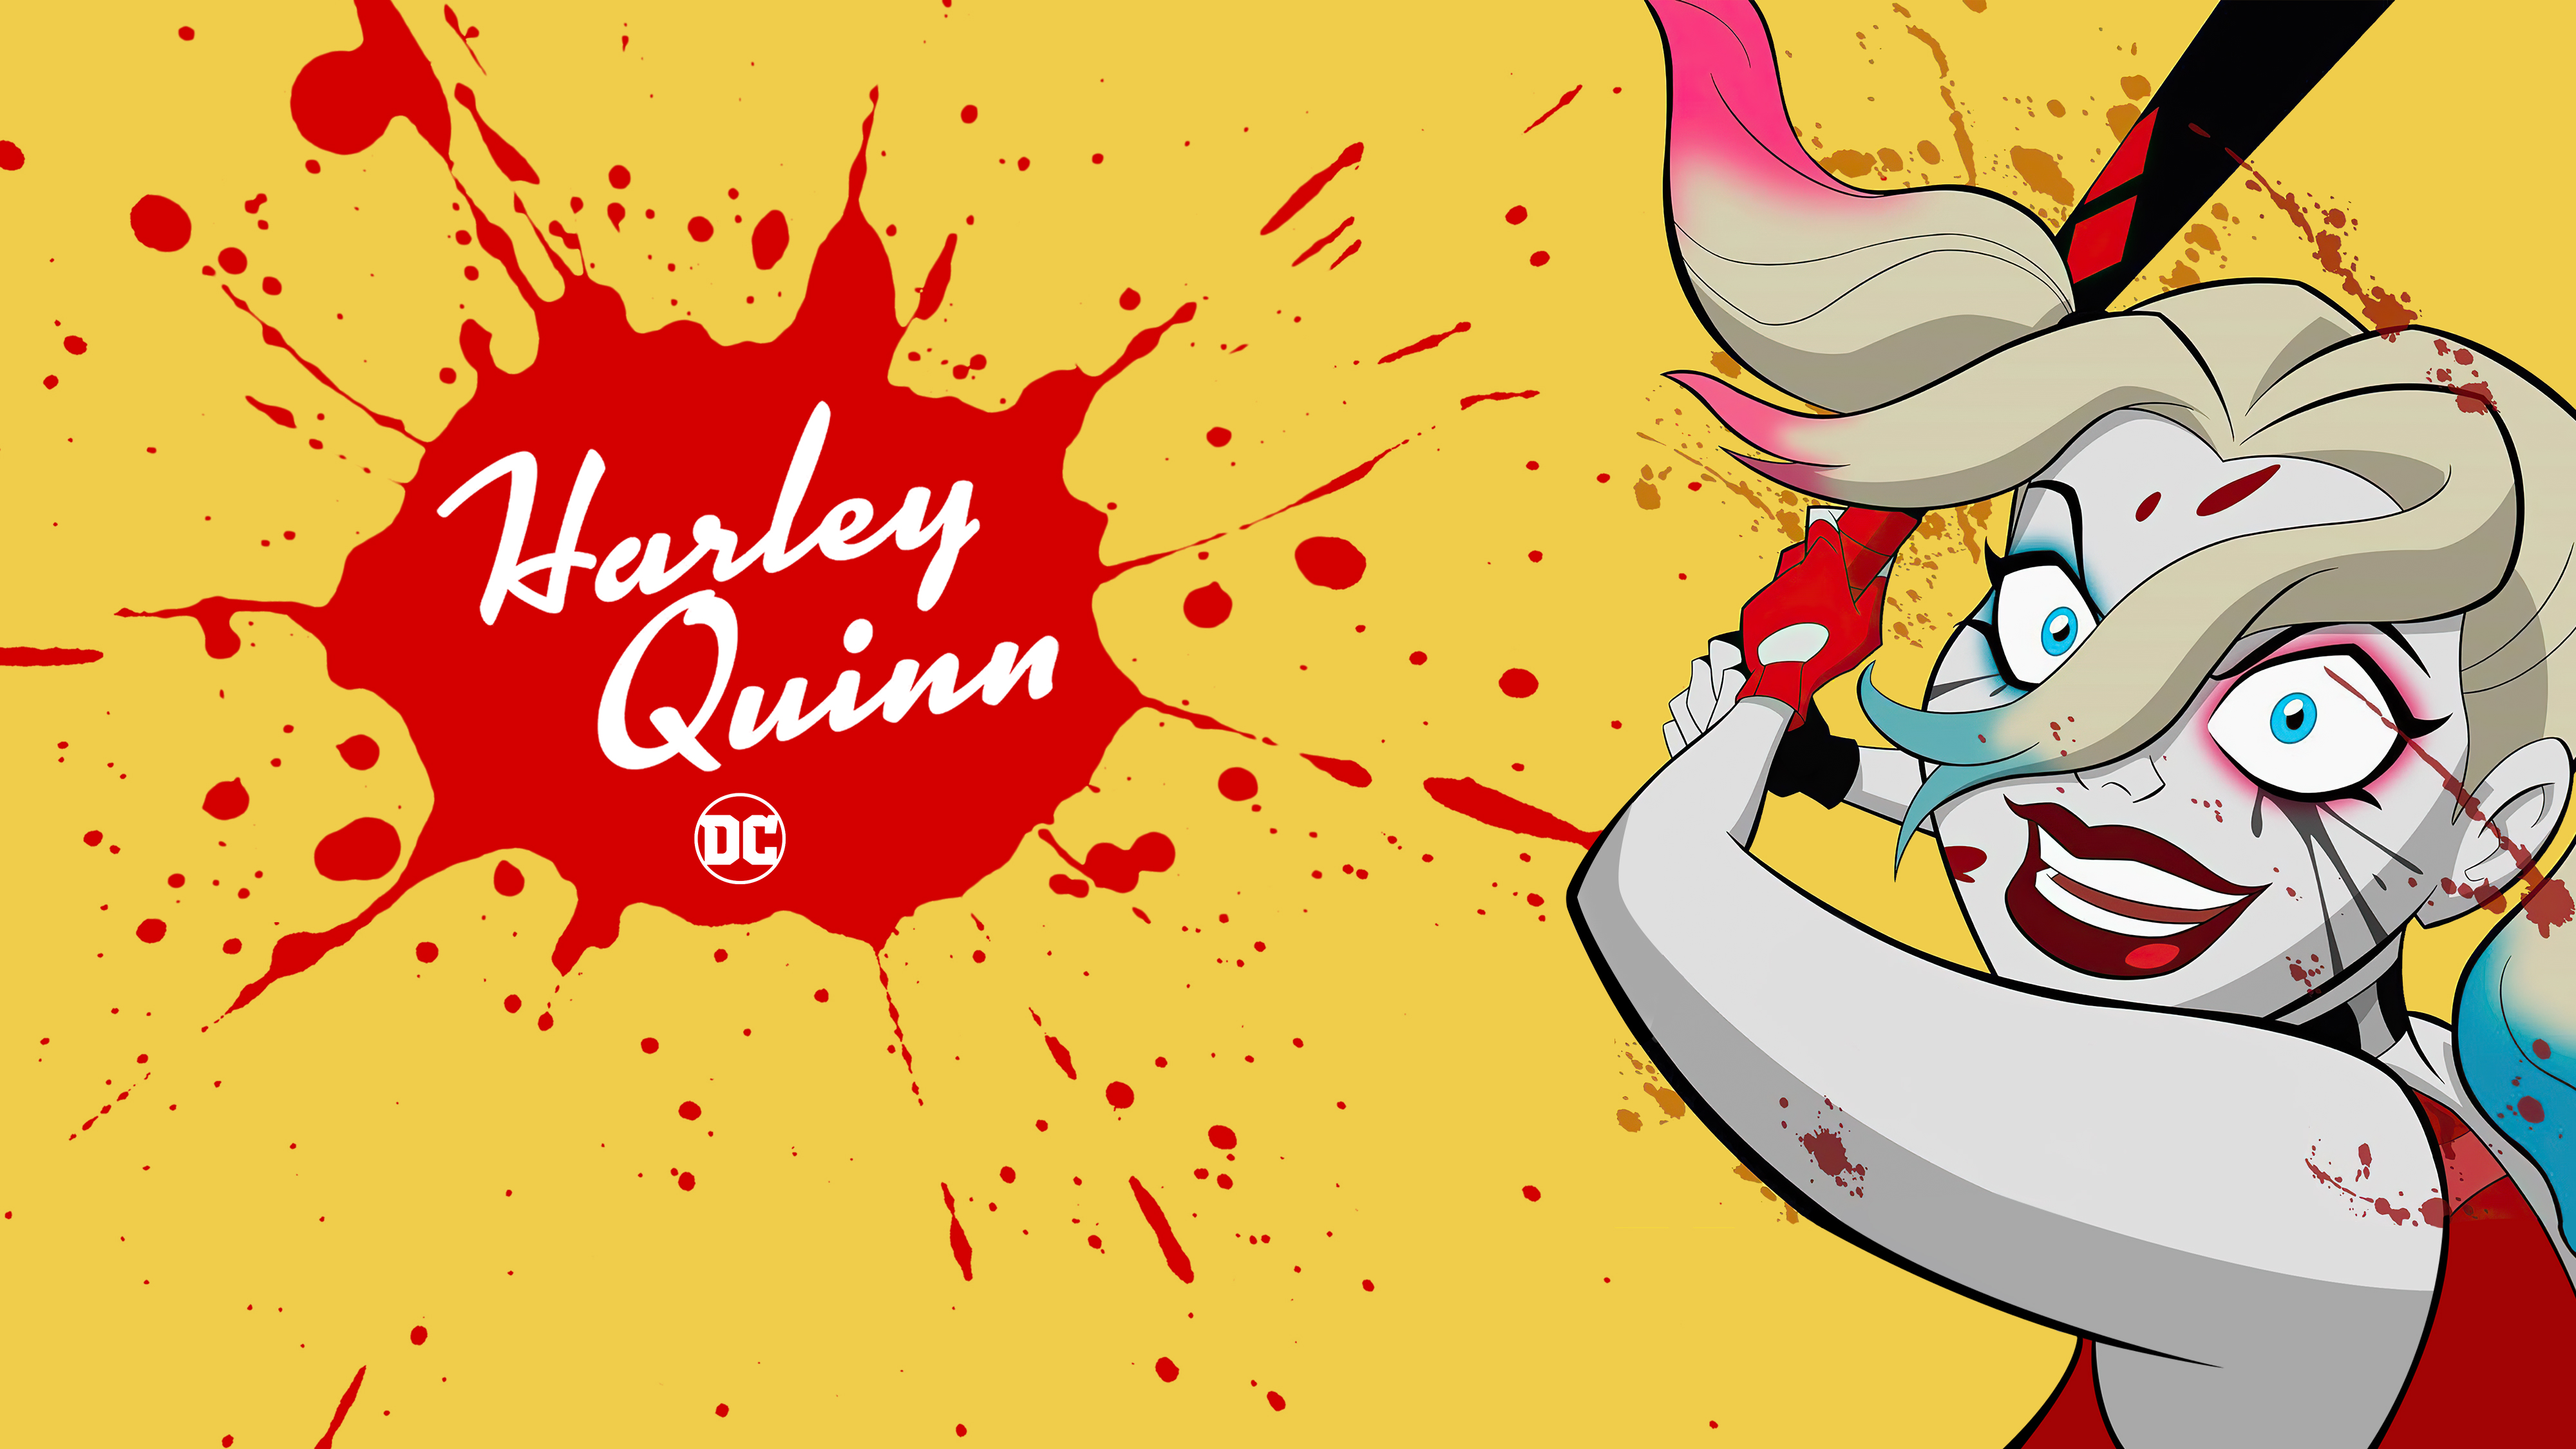 Harley Quinn Wallpaper 4k